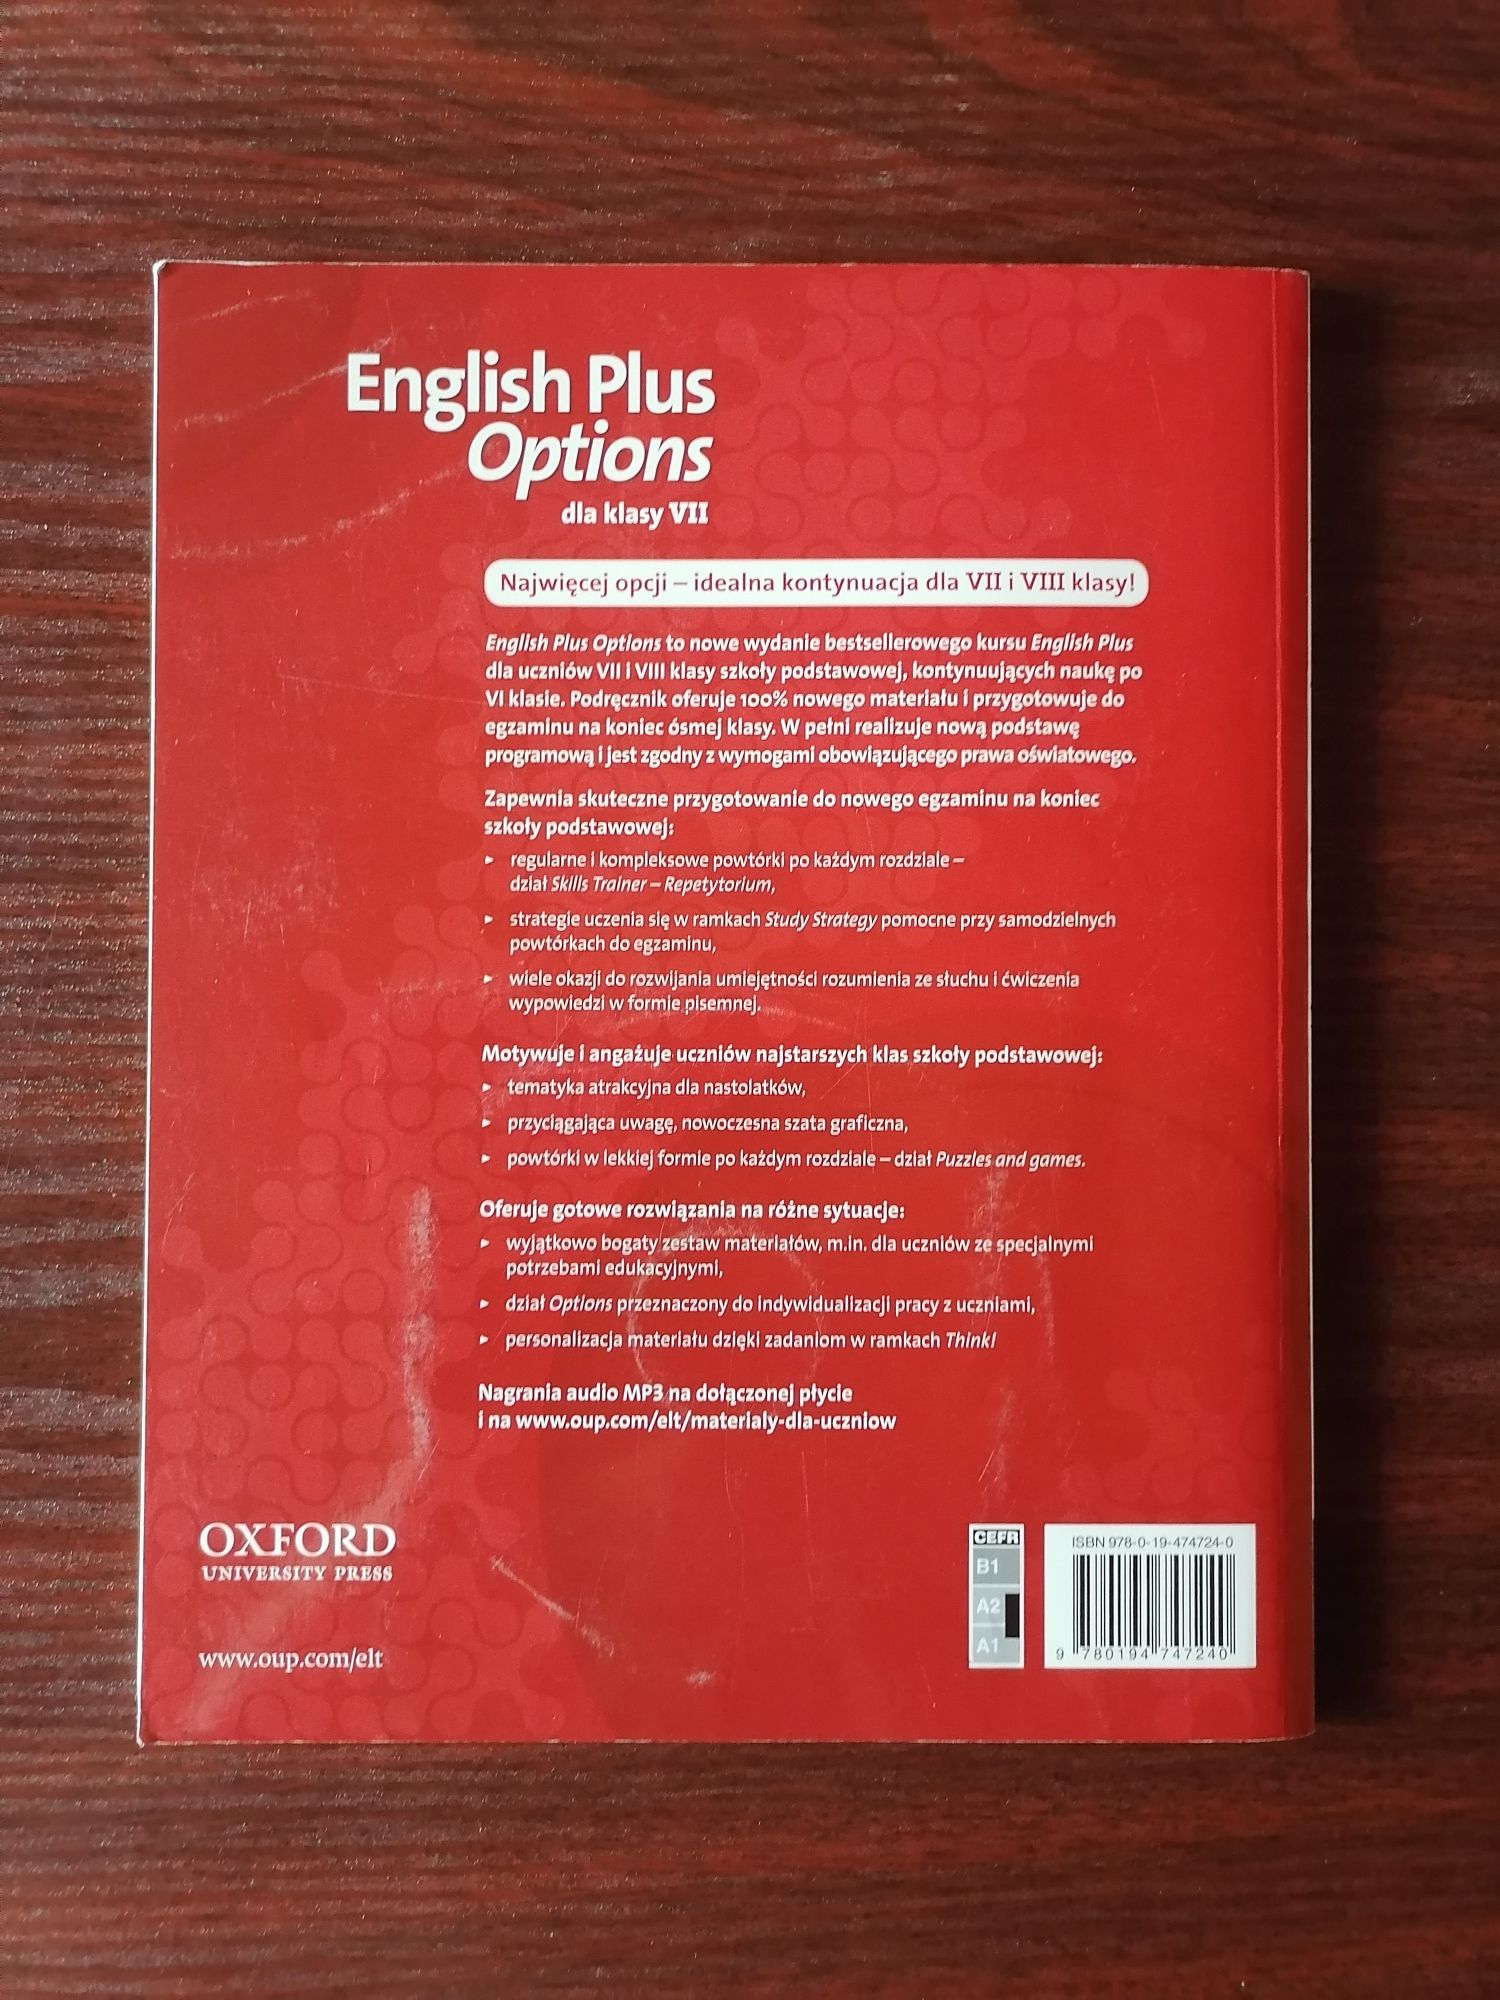 English plus options podręcznik do języka angielskiego+ płyta CD